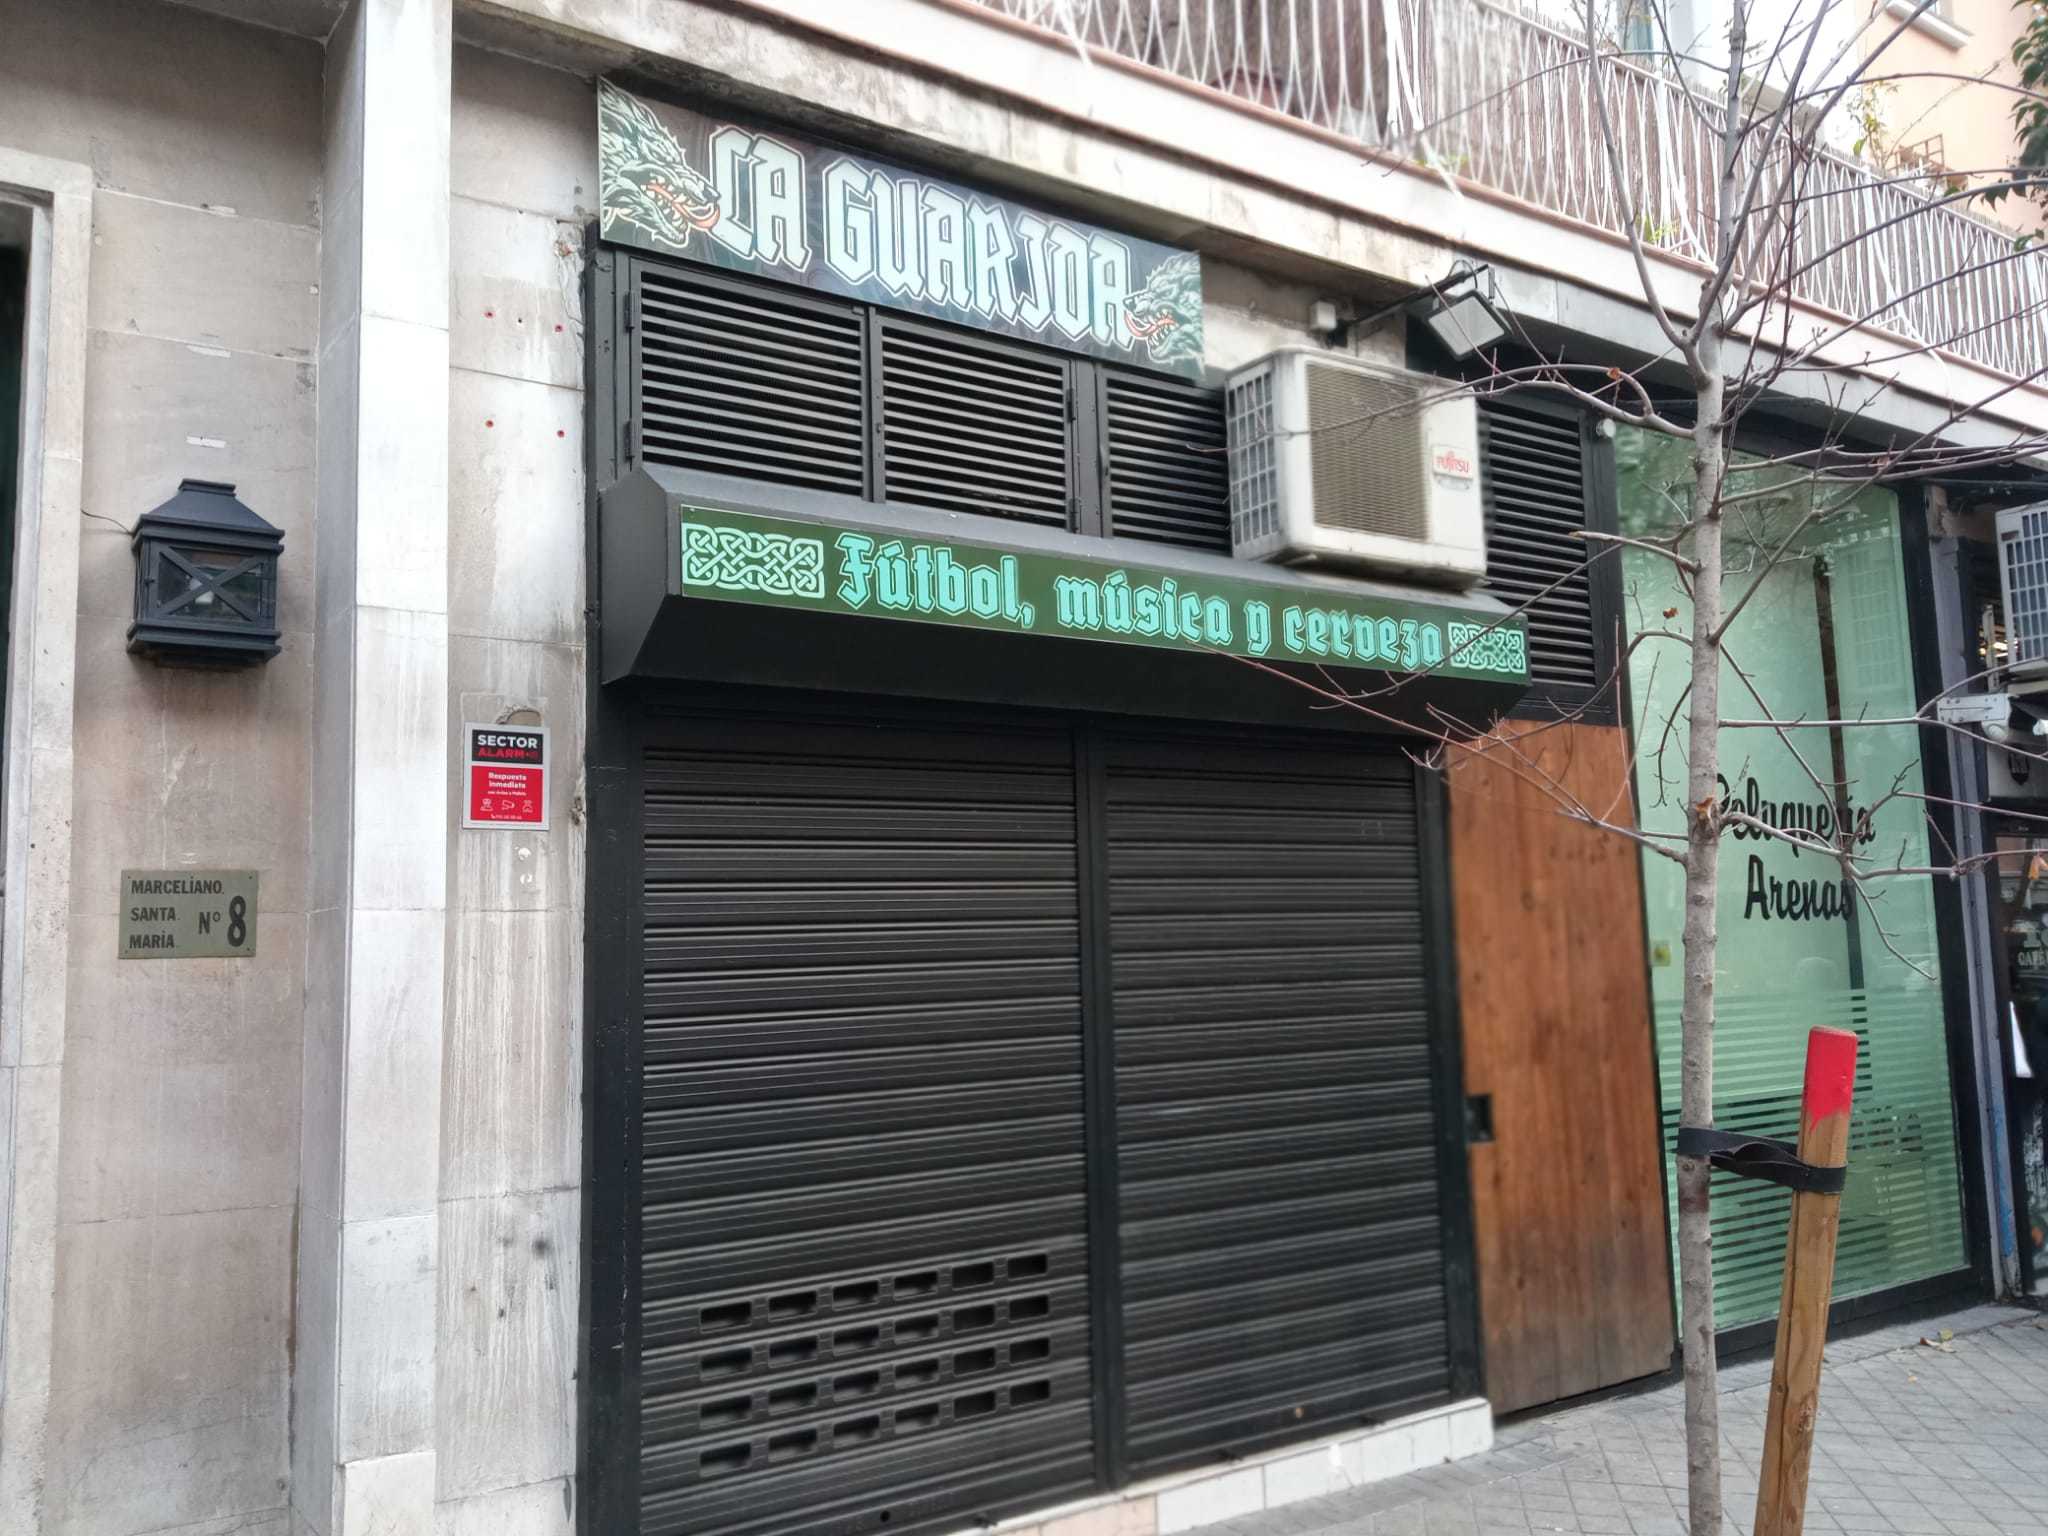 Fachada del bar La Guarida en la calle de Marceliano Santa Mara.